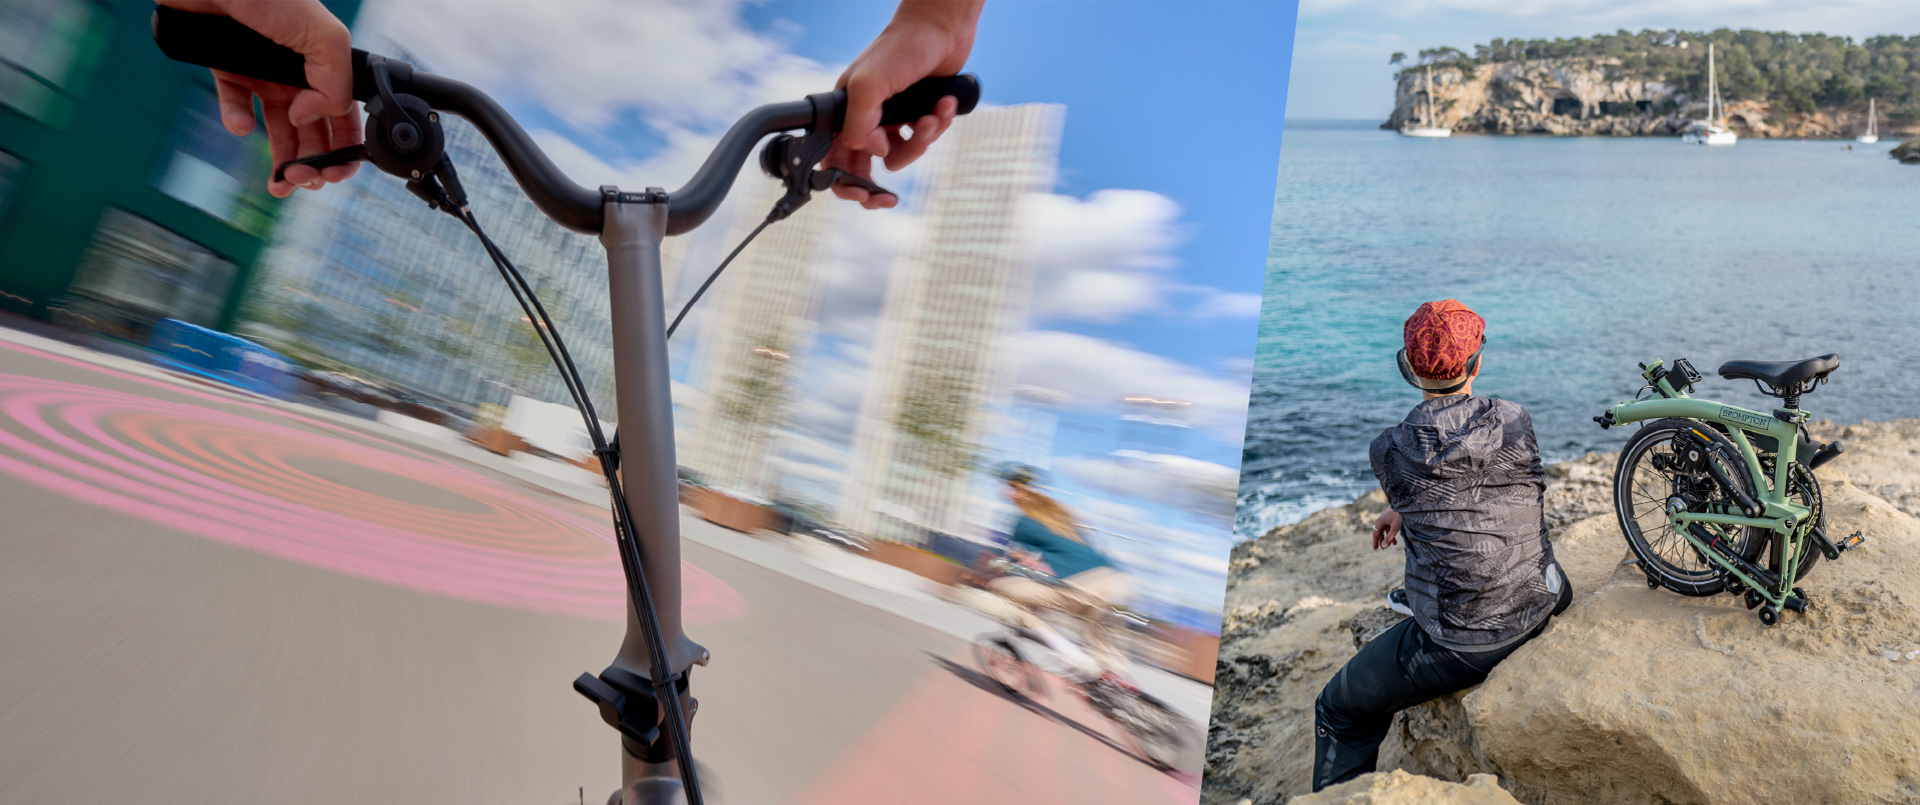 2 different scenes on brompton bikes